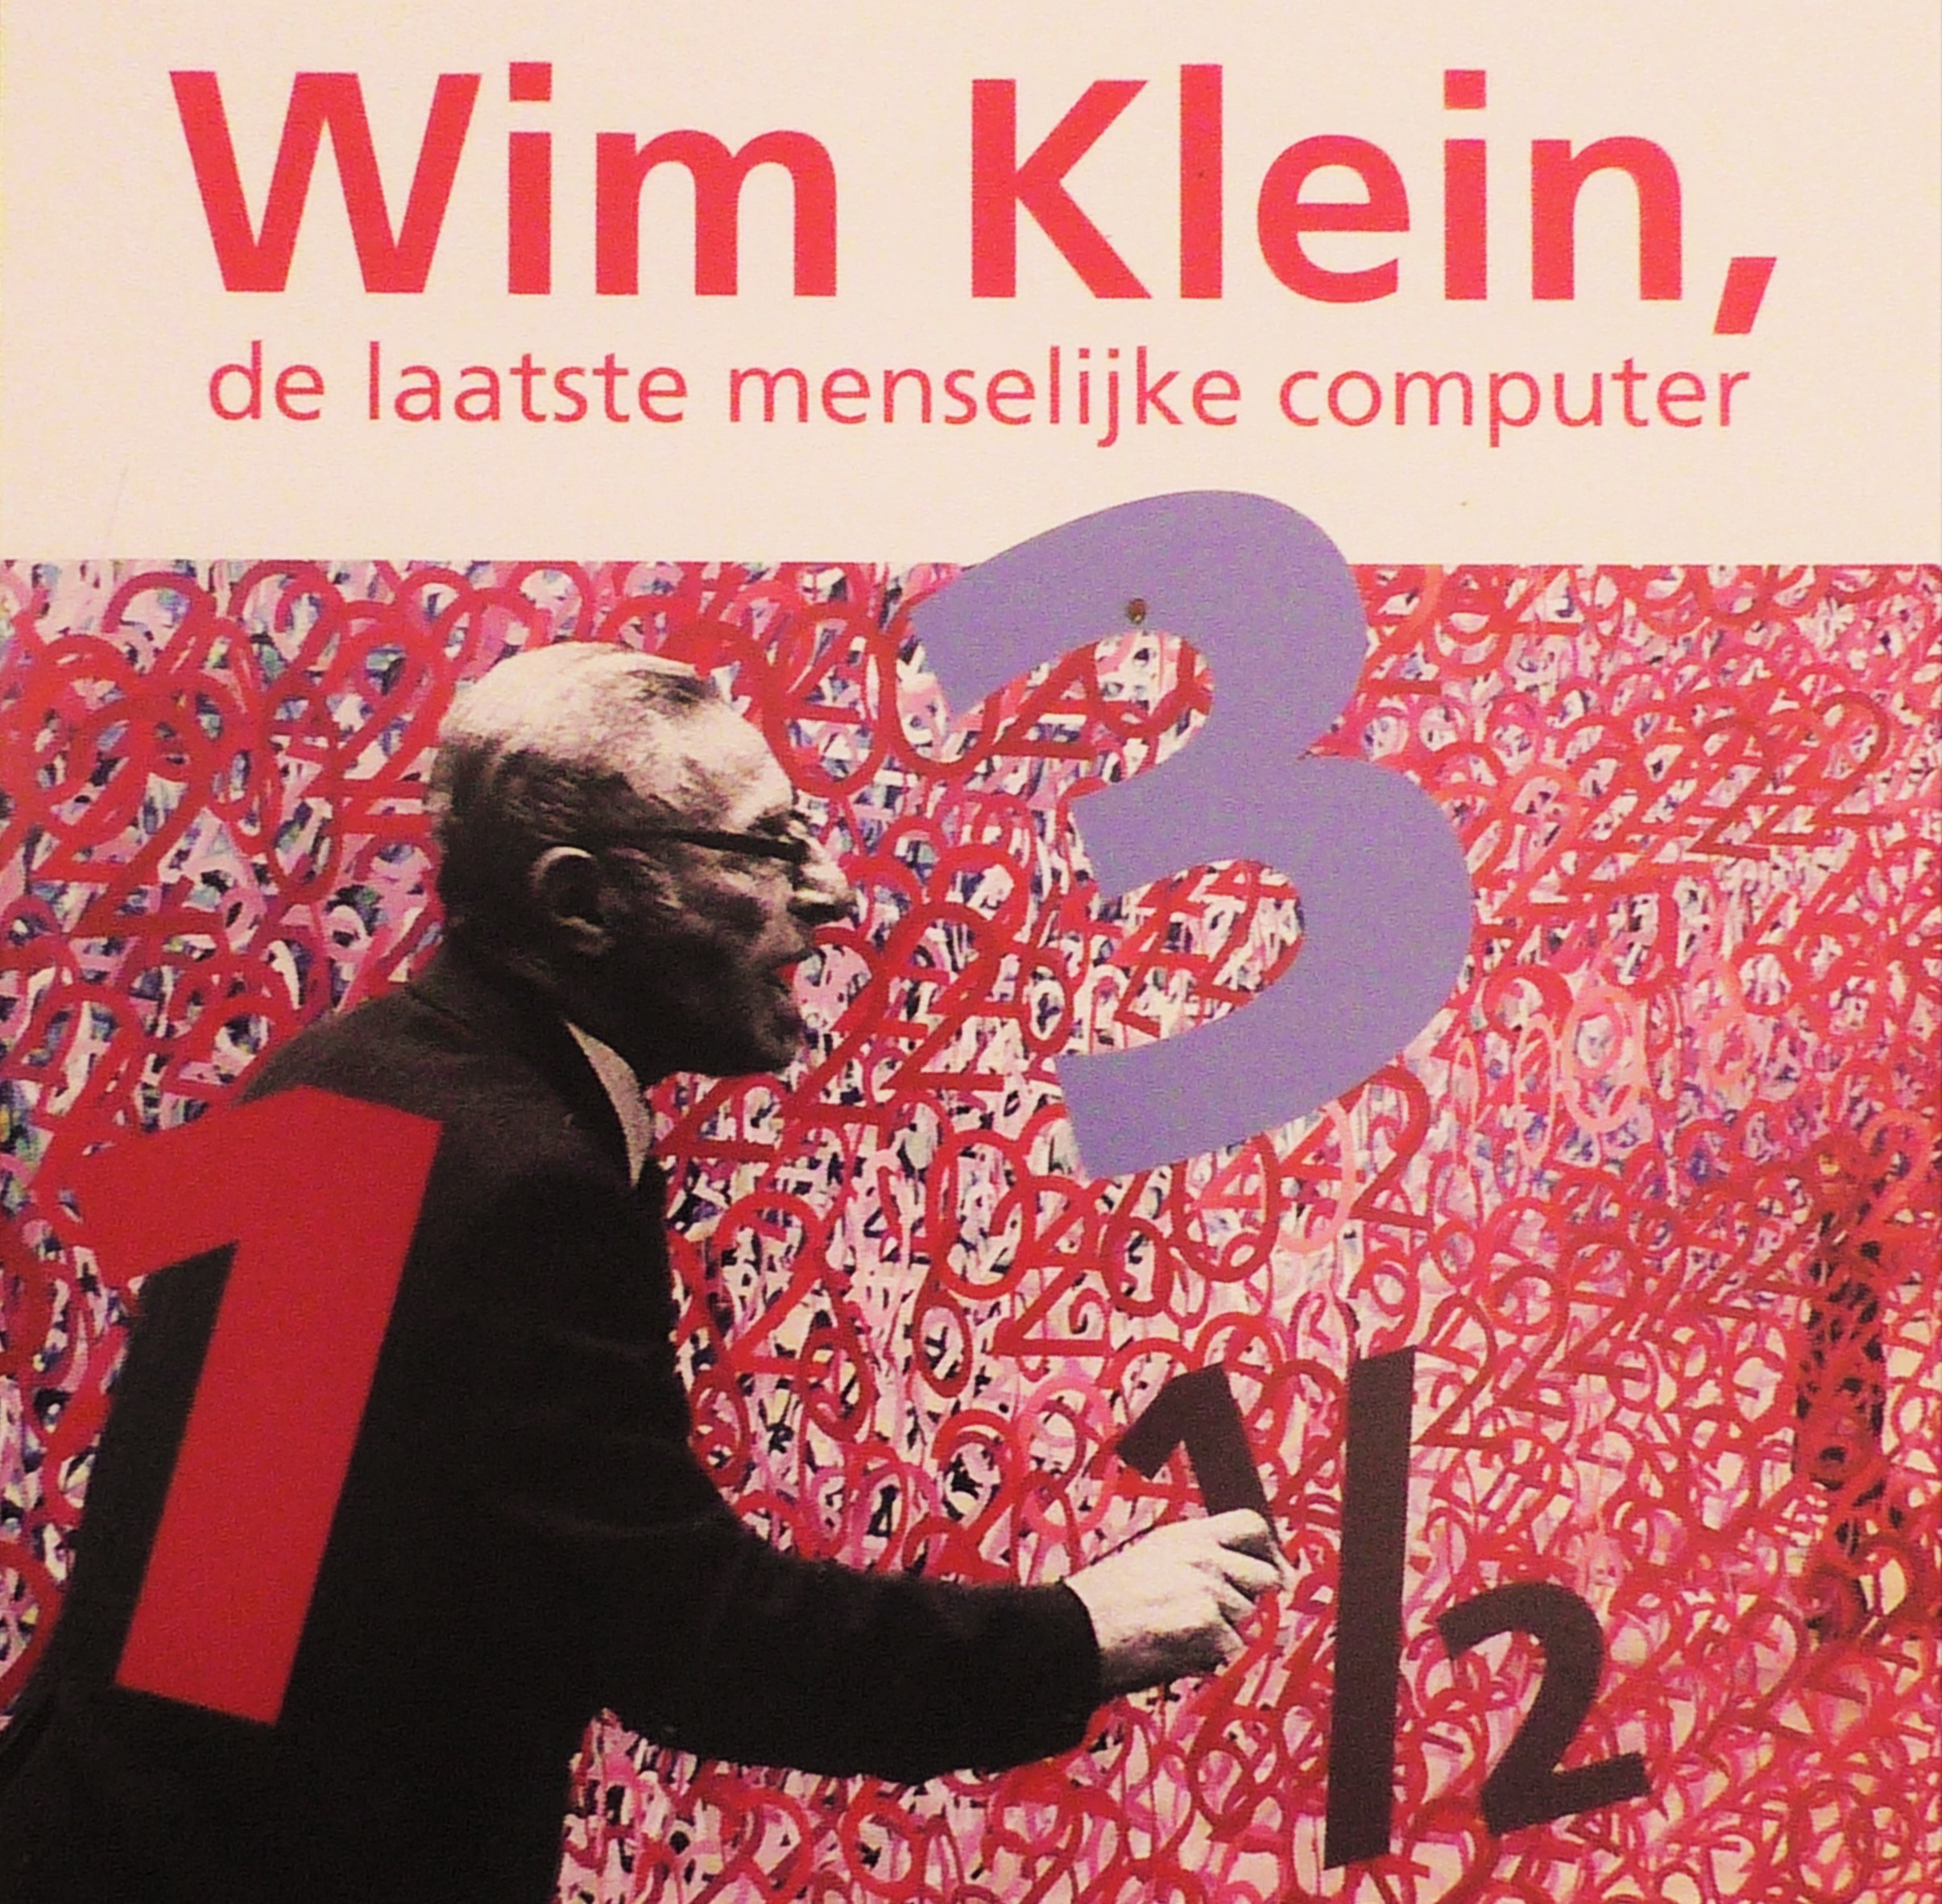 De verkoop van Wim Klein, de laatste menselijke computer is begonnen.